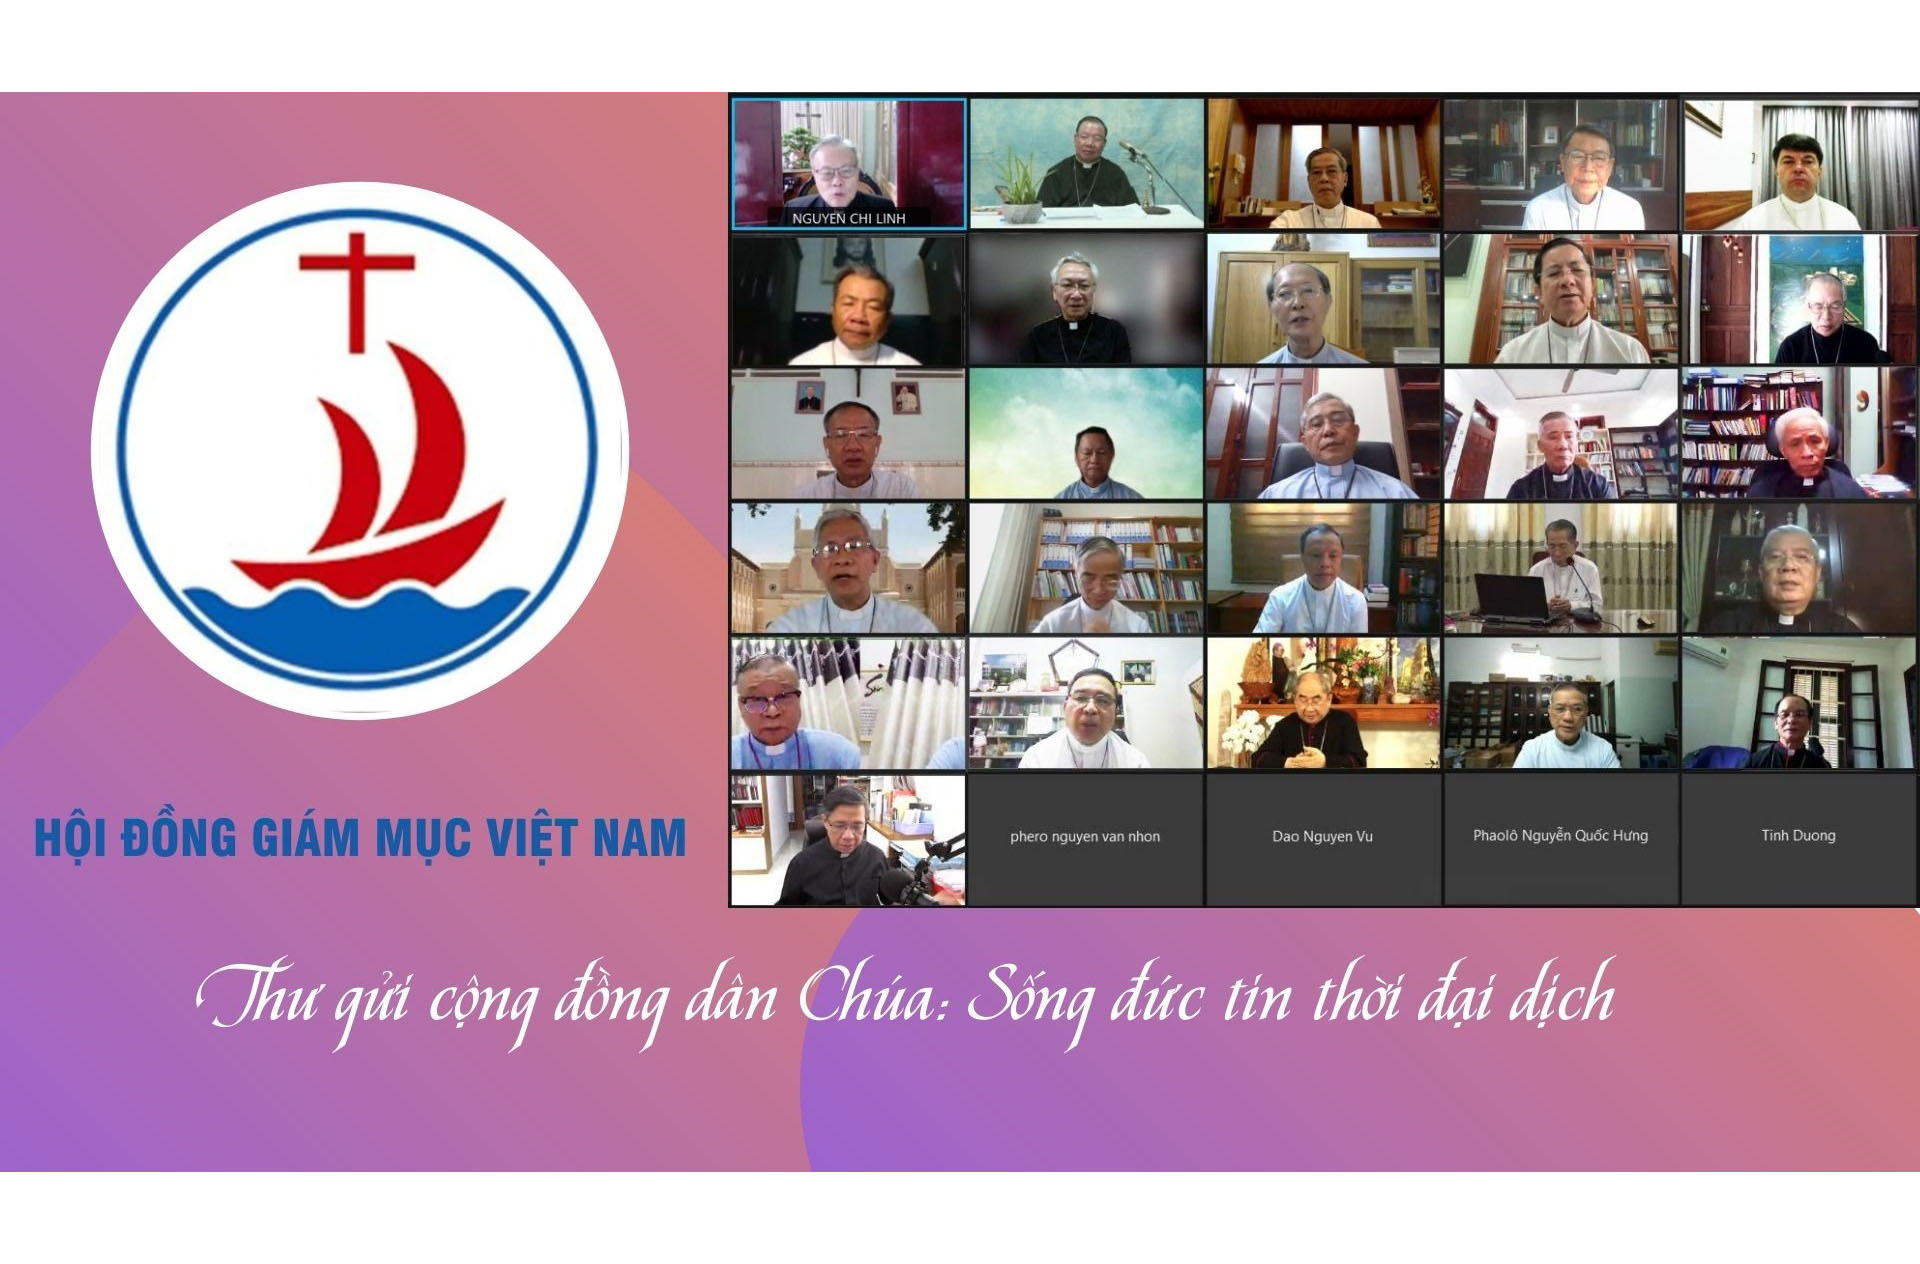 Thư Hội đồng Giám mục Việt Nam gửi cộng đồng dân Chúa: Sống đức tin thời đại dịch